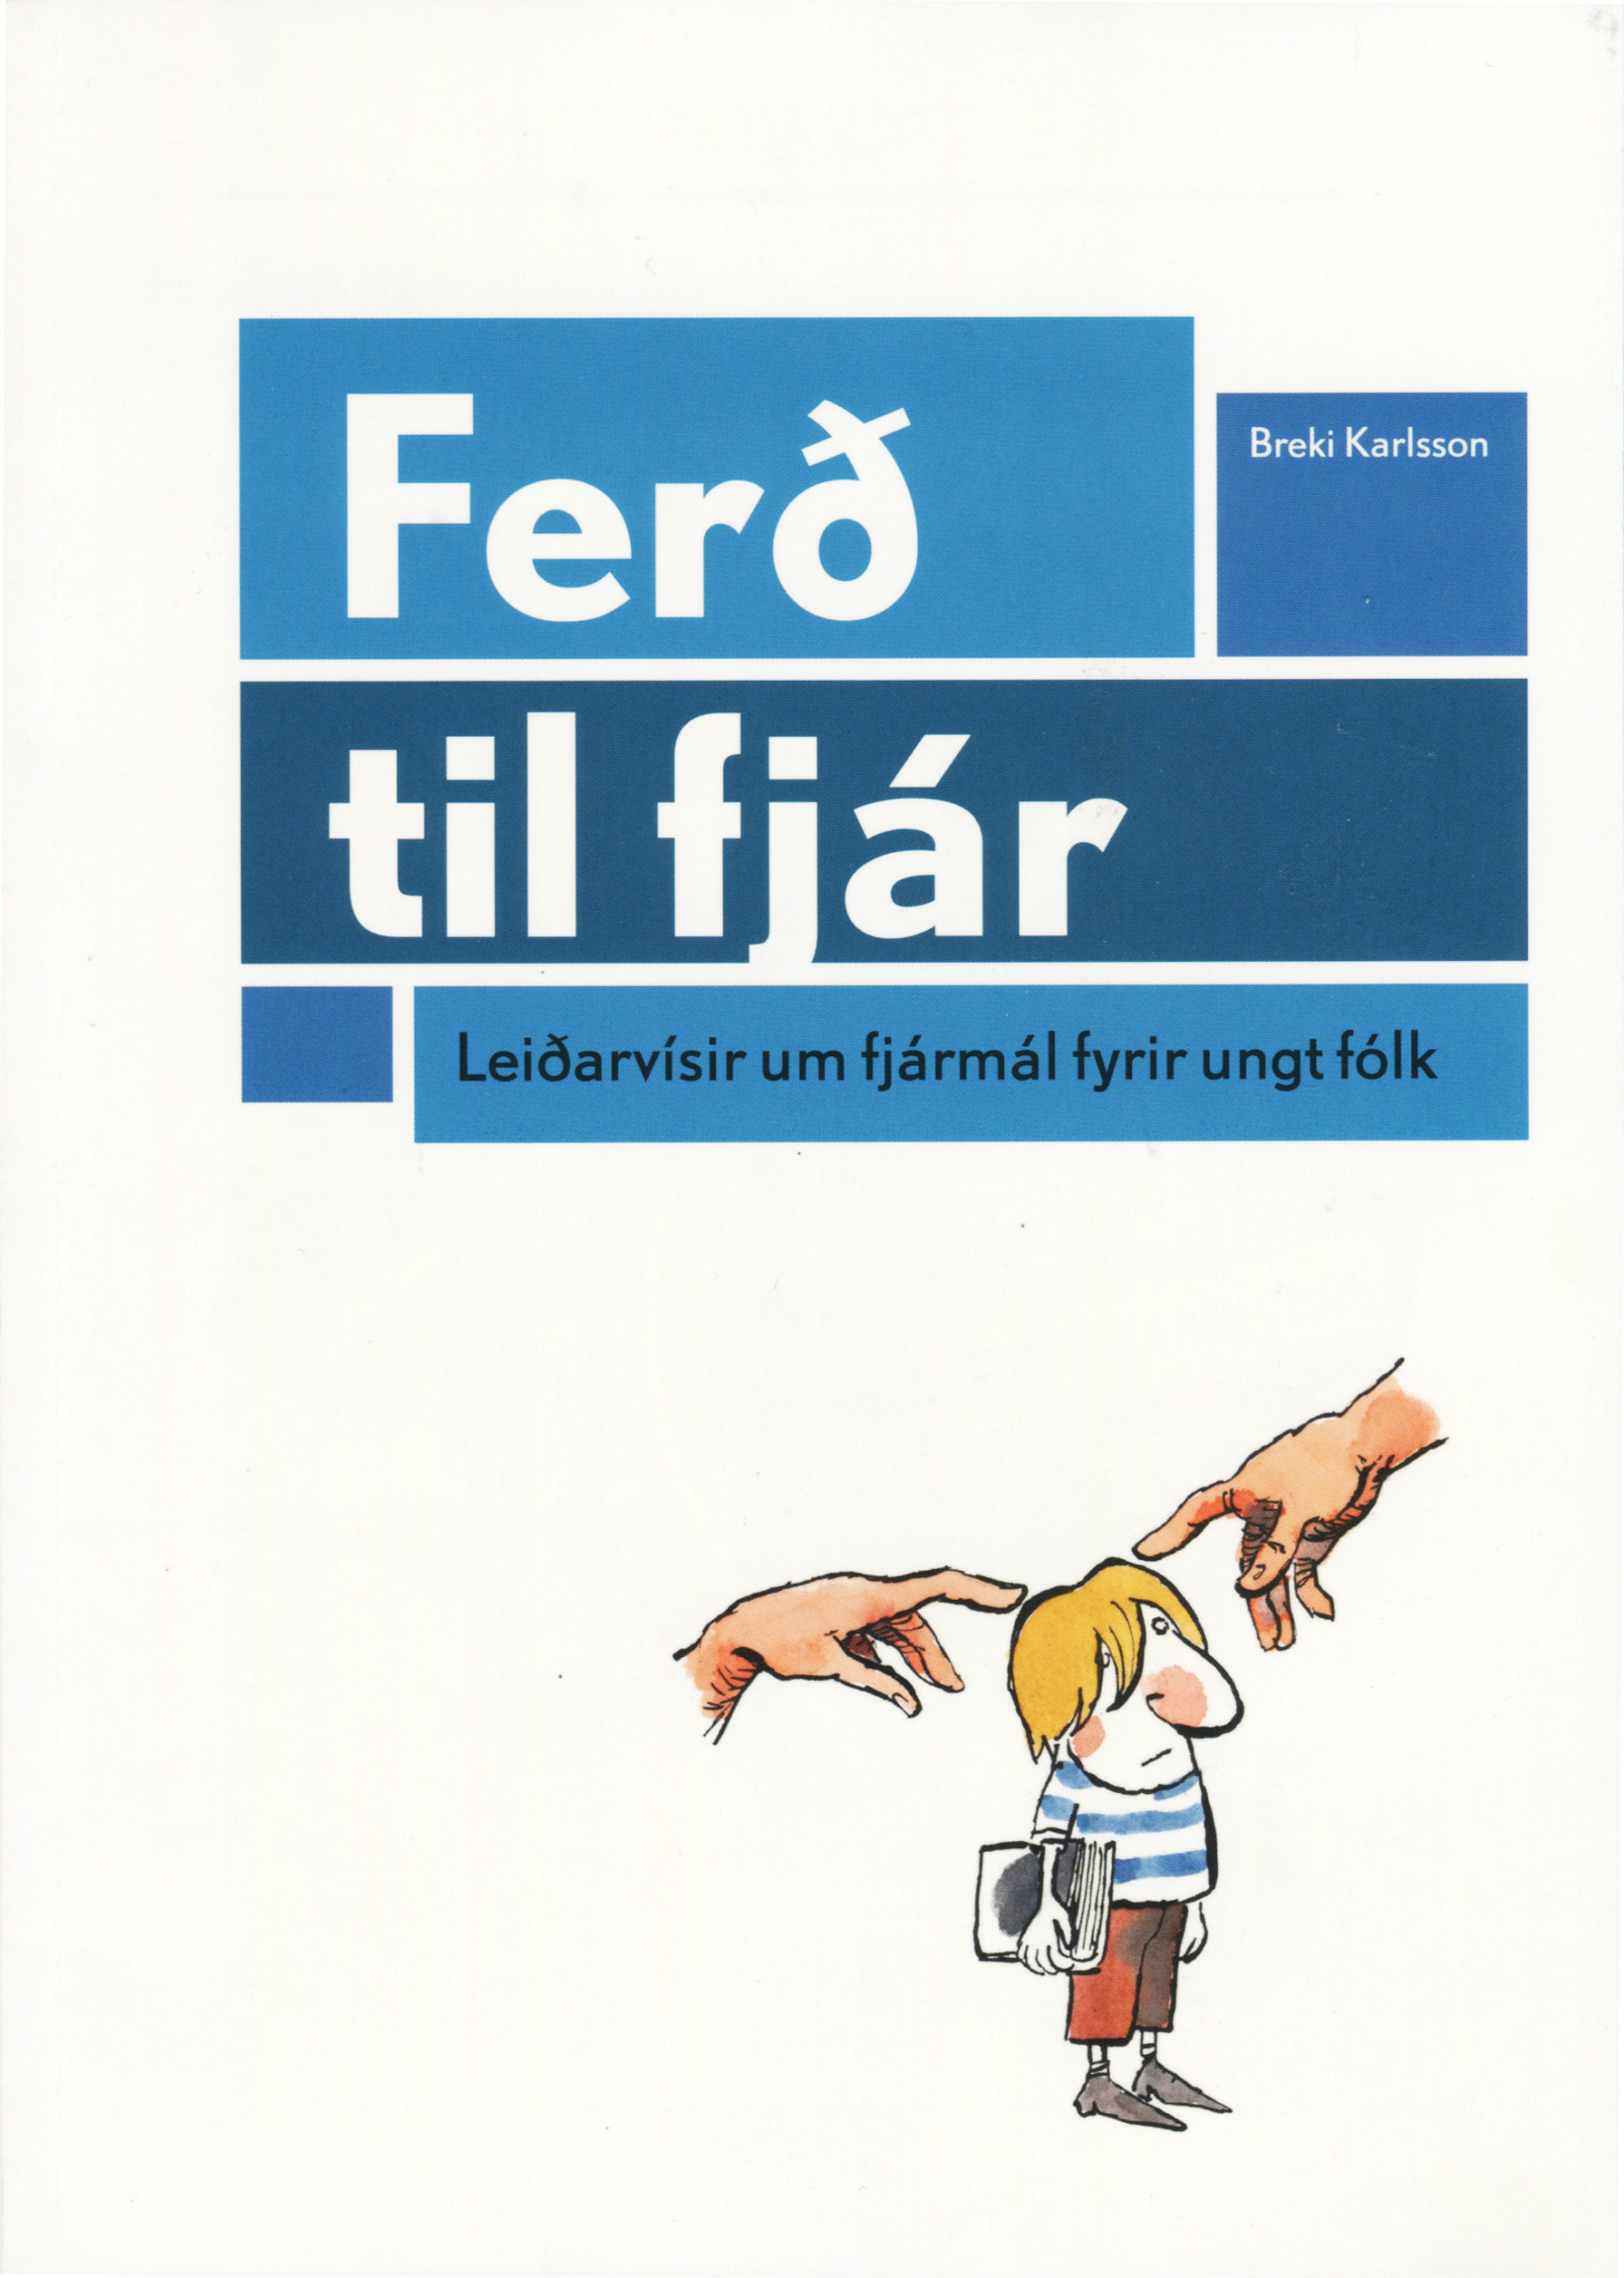 Ferð til fjár